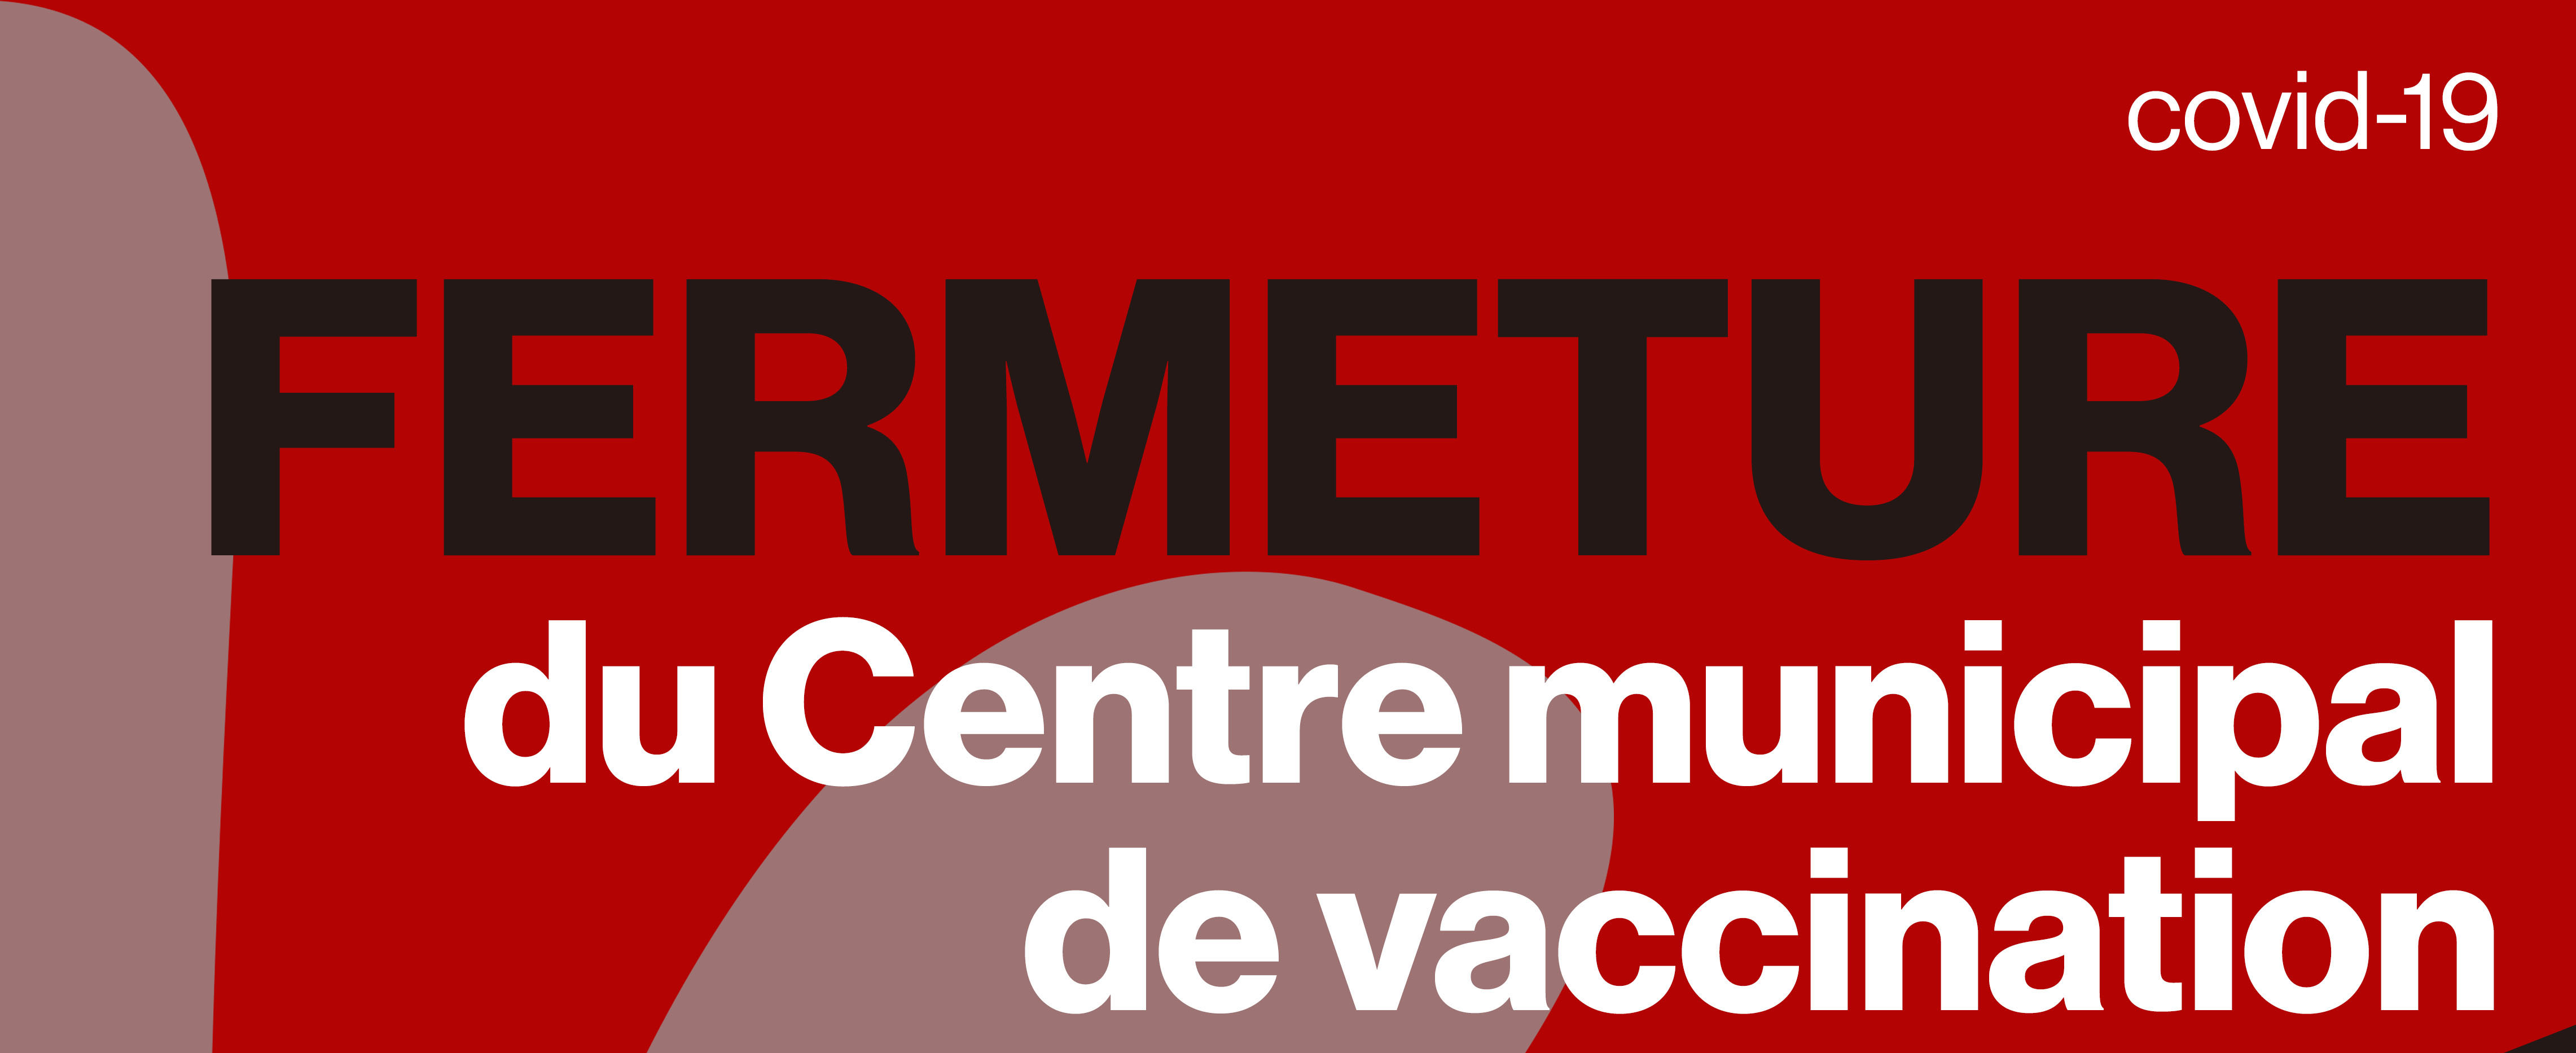 Fermeture du centre municipal de vaccination